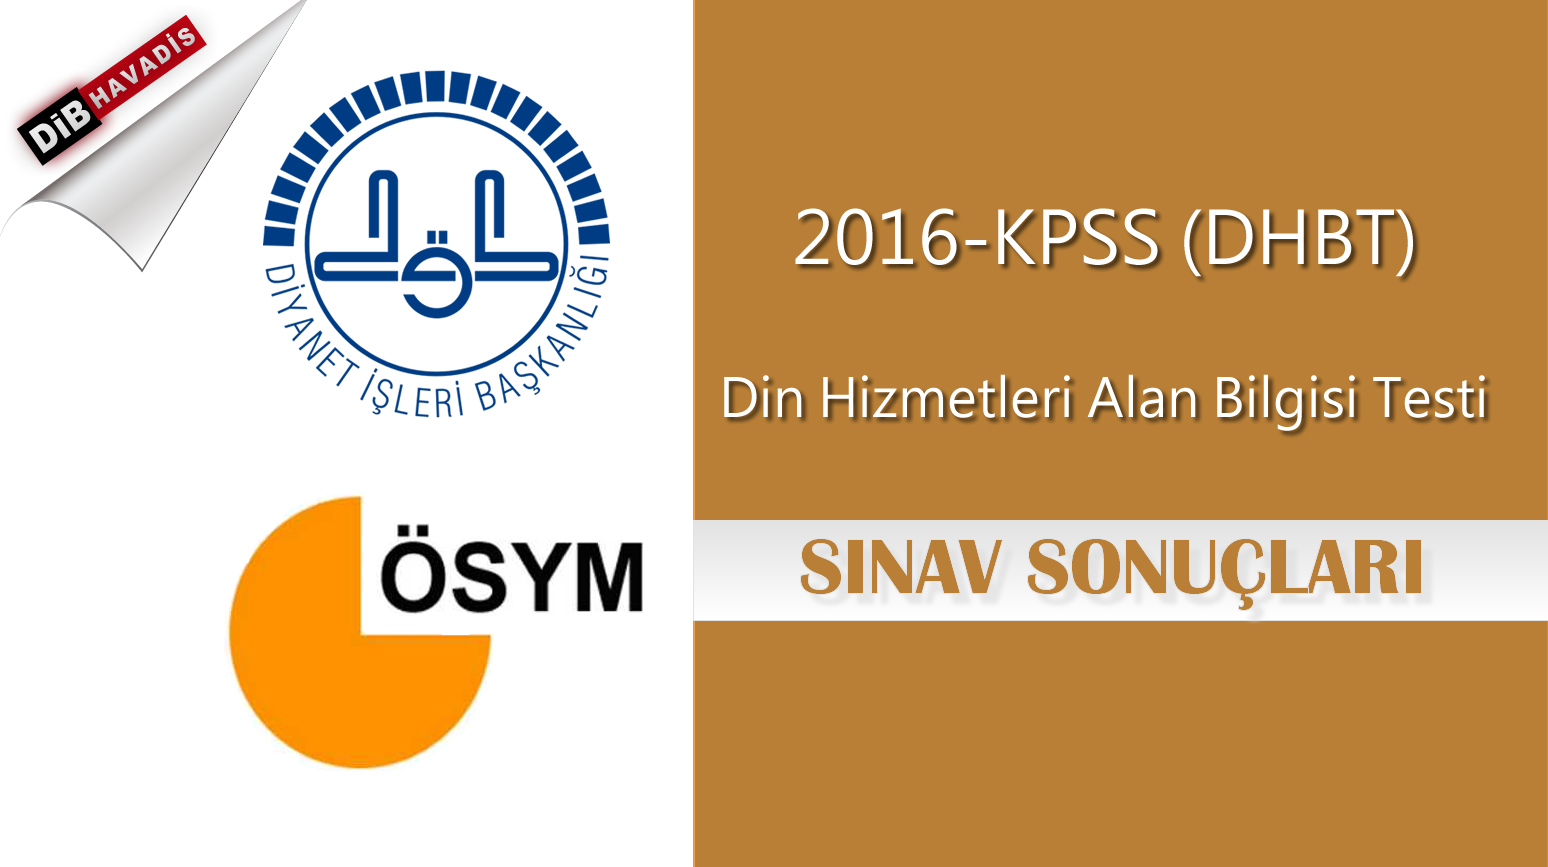 2016-KPSS DHBT Sonuçları Açıklandı!